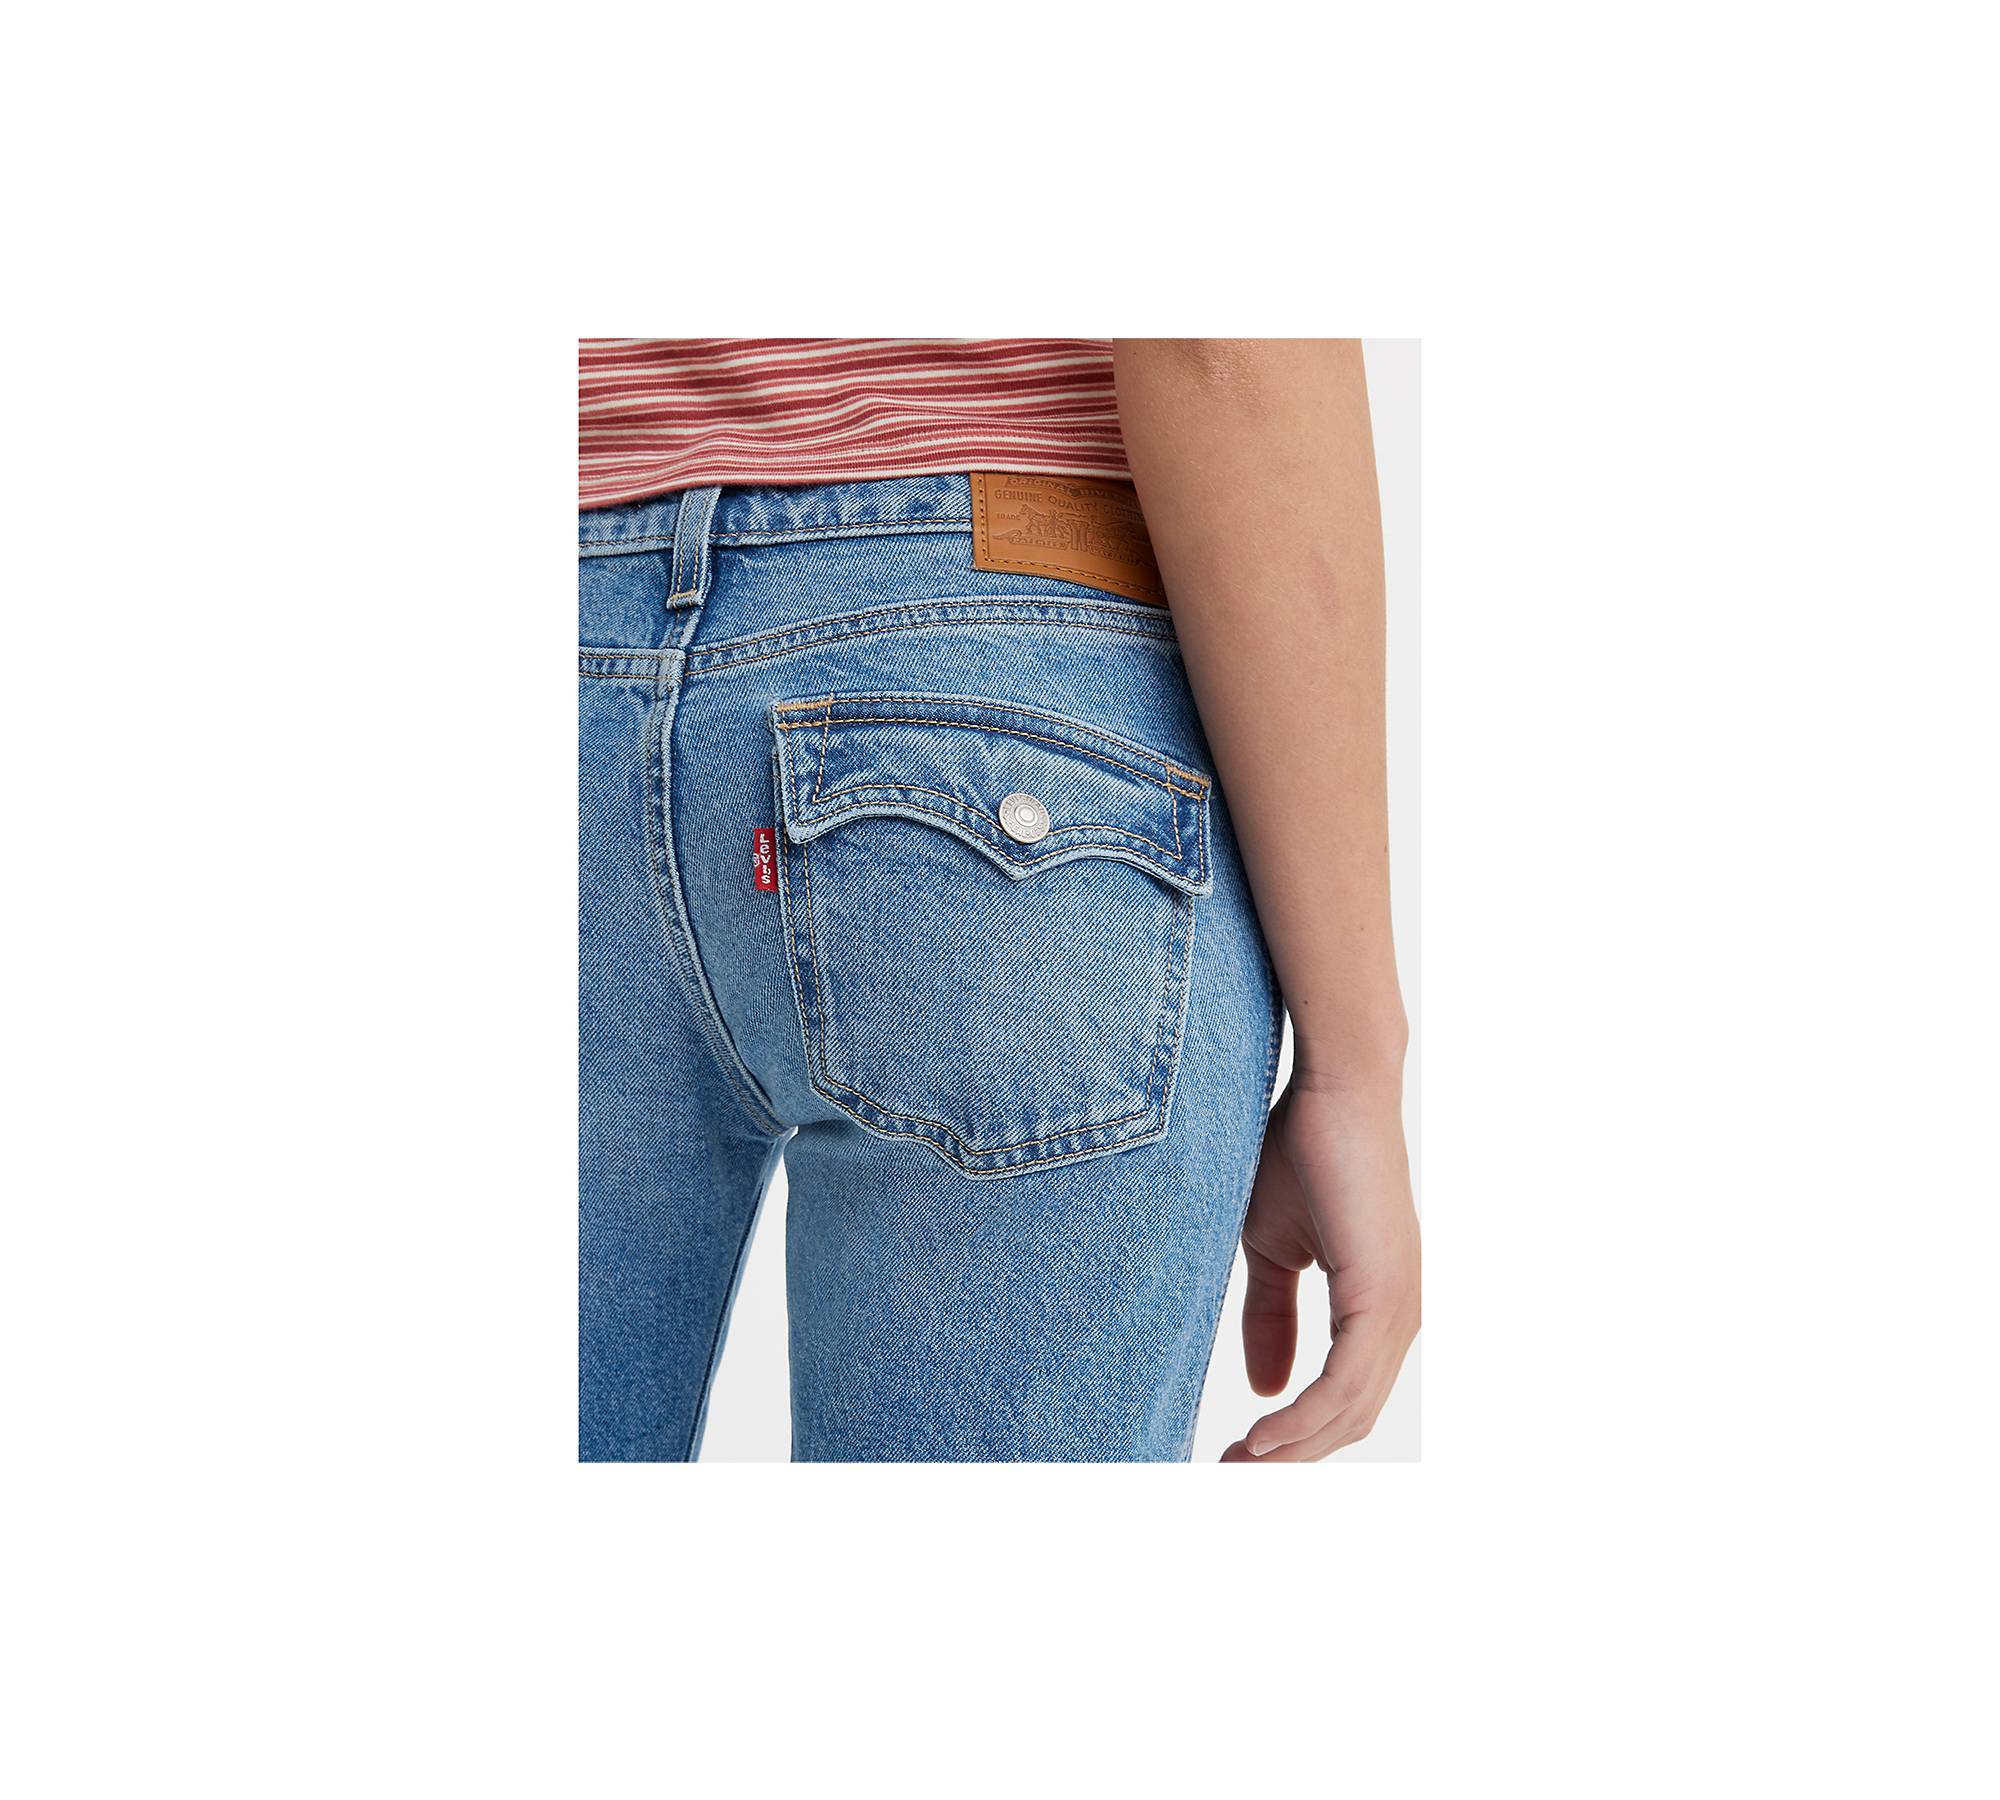 Levi's Capris Denim Jeans Blue Back Flap Pockets Women's Size 4